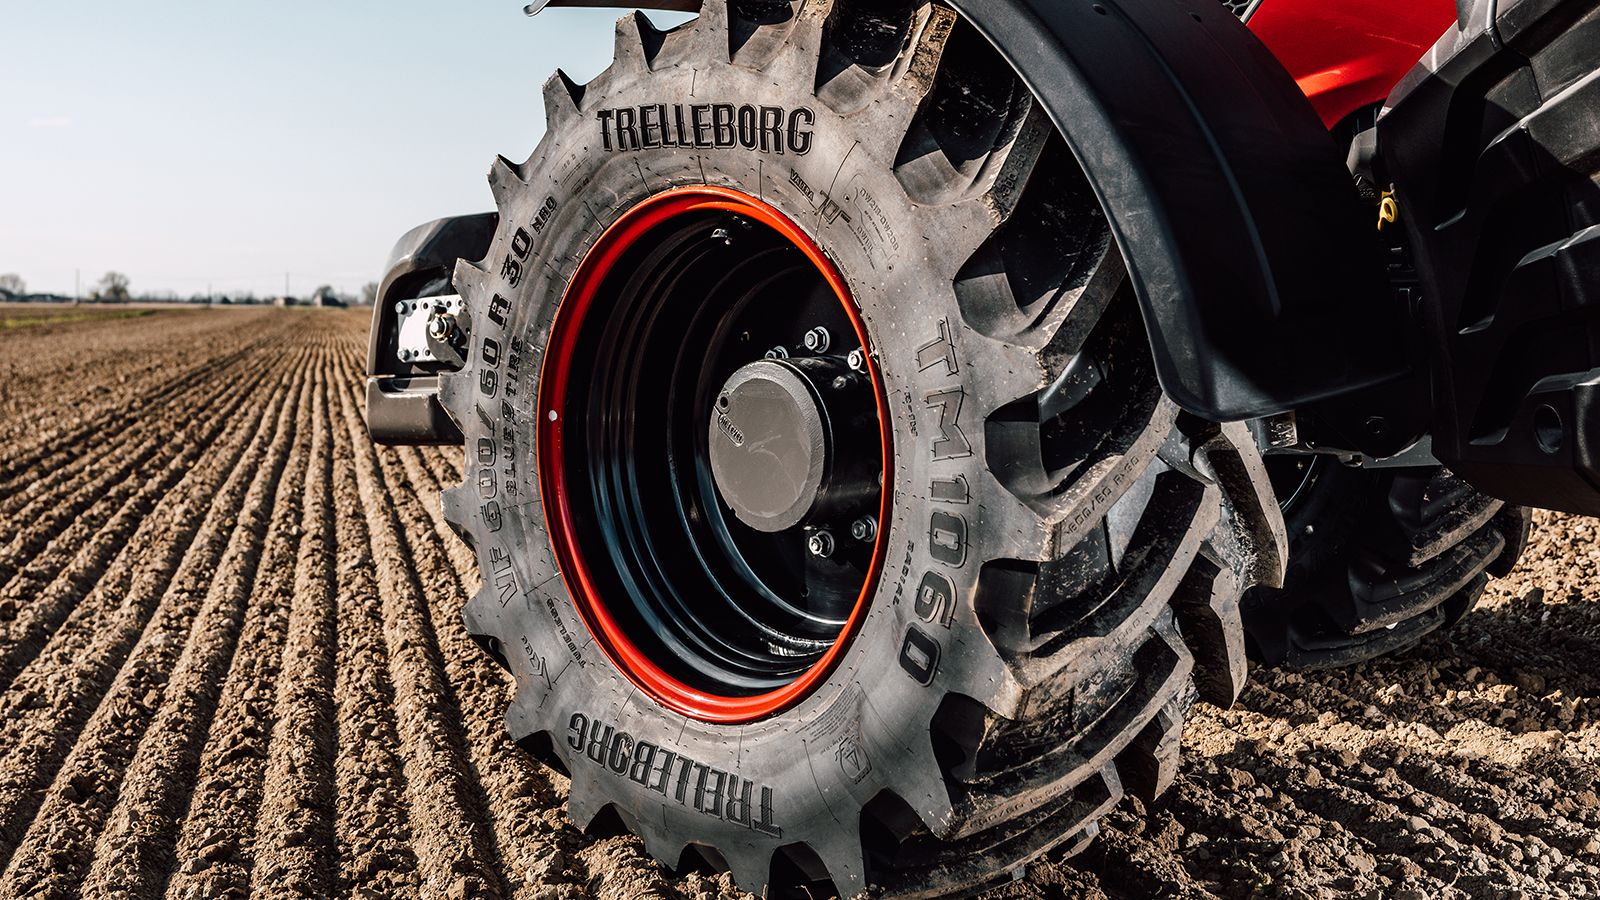 Τη σουηδική εταιρεία Trelleborg Wheel Systems Holding AB (TWS) που ειδικεύεται στα ελαστικά για γεωργικά και βιομηχανικά μηχανήματα , ανακοίνωσε πως εξαγοράζει η Yokohama Rubber, της οποίας τα ελαστικ